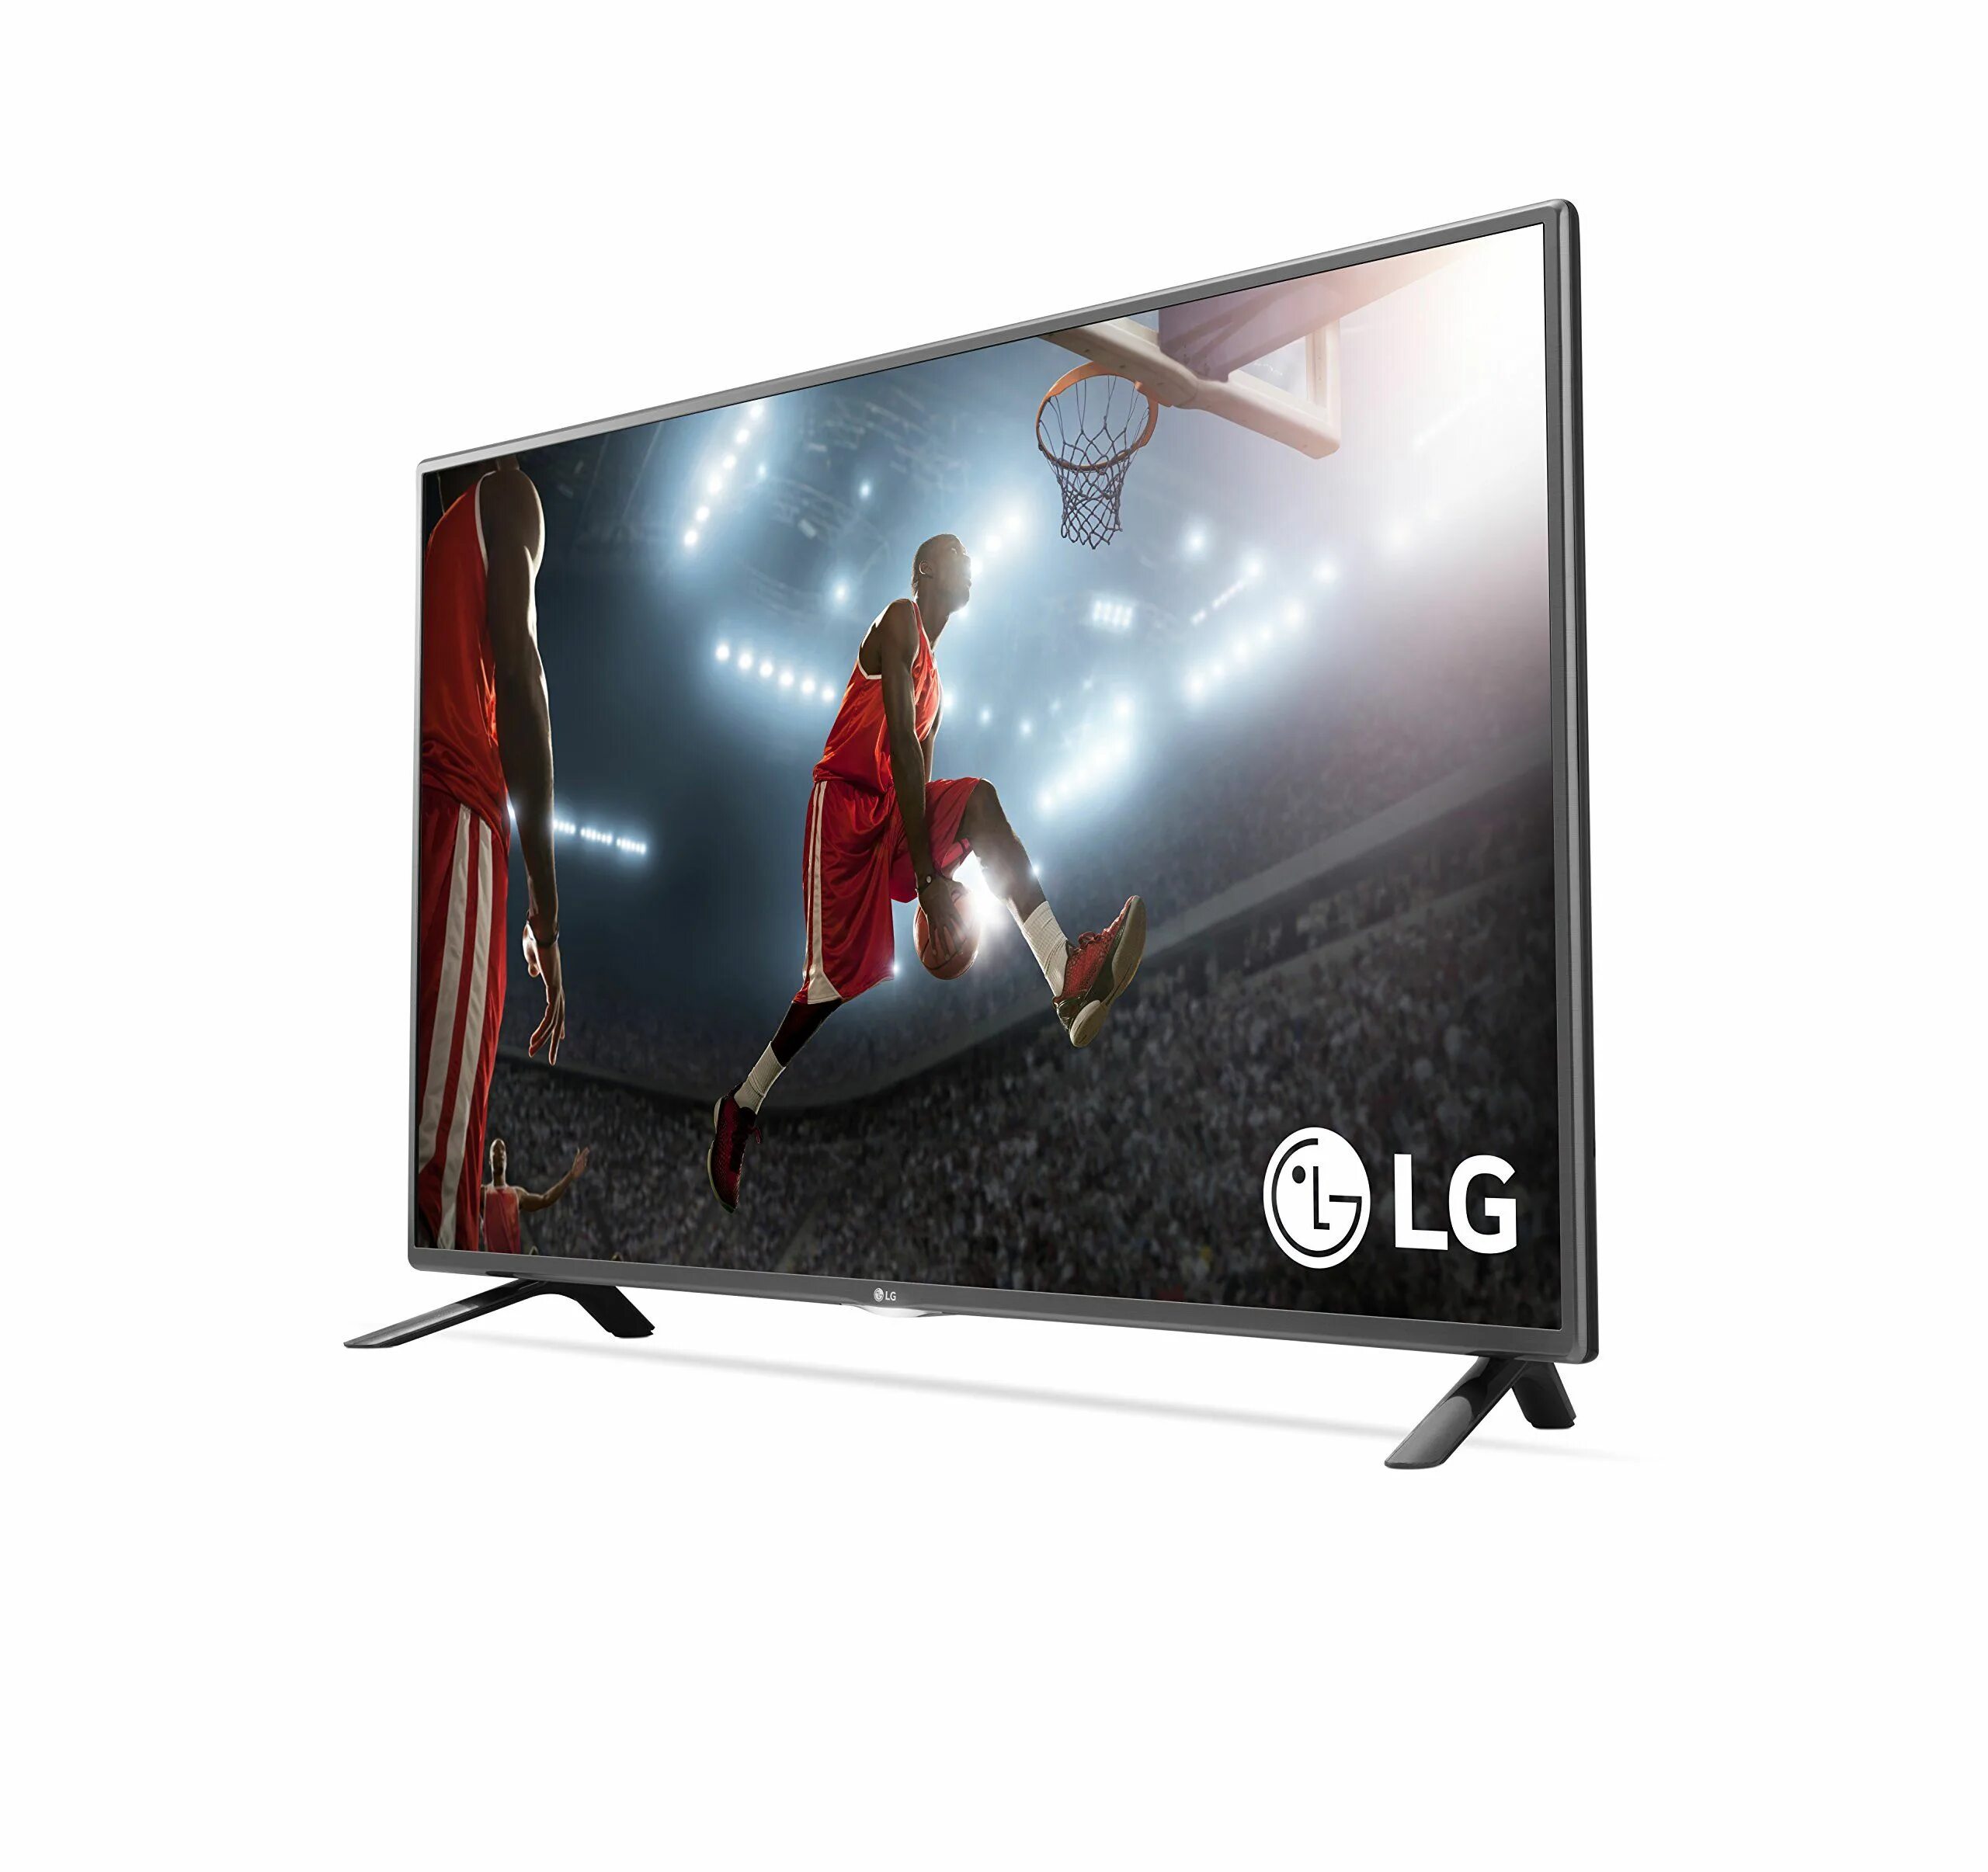 LG 32 Smart 2015. LG TV 32 inch 2015. LG Smart TV 2015. LG 32lf5800. Телевизор lg 2015